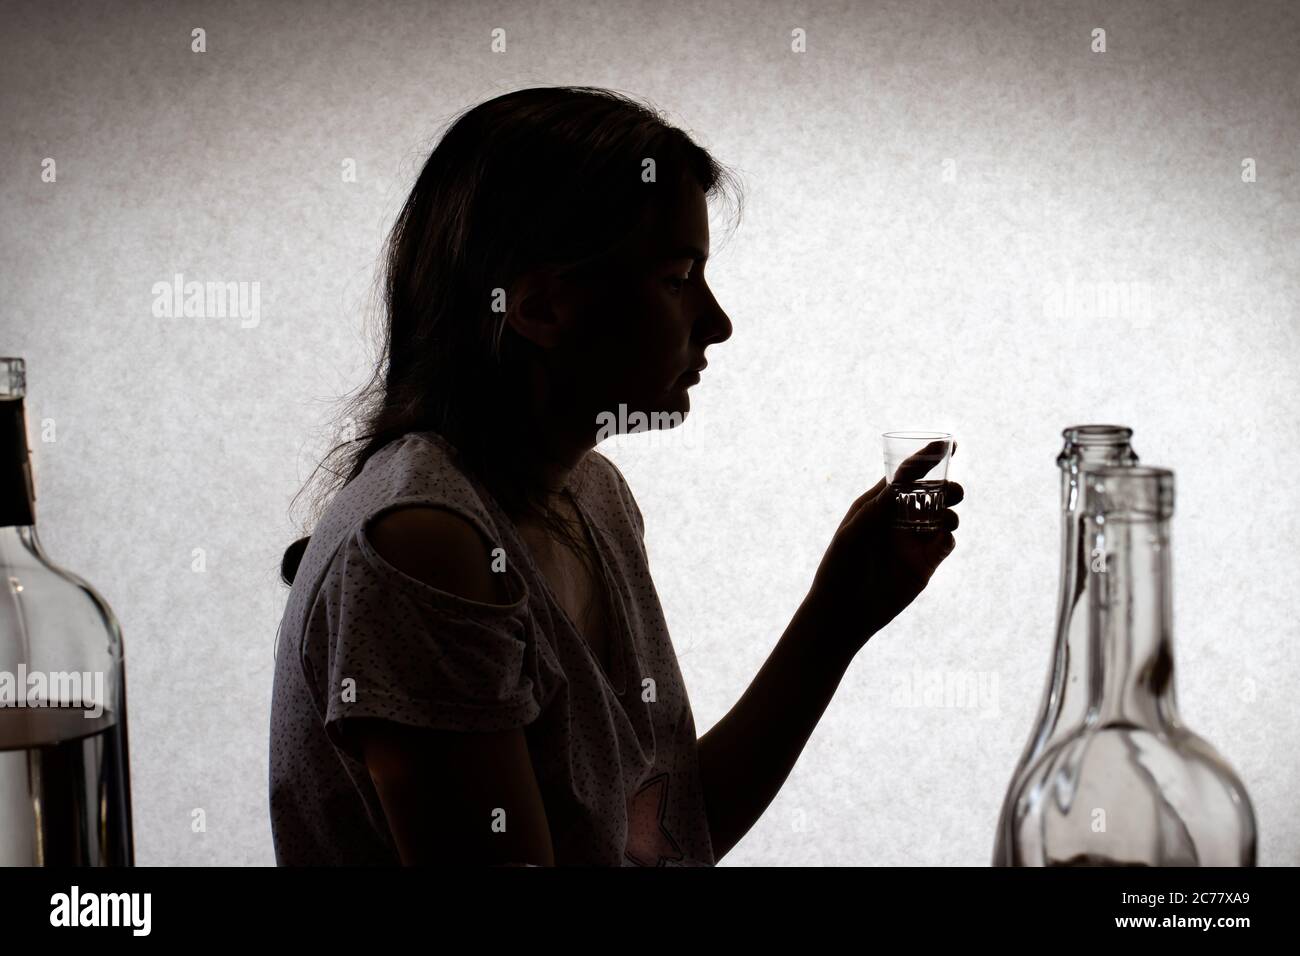 La femme tient un verre avec de l'alcool fort. Alcoolisme féminin, dépendance à l'alcool, délire tremens. Photo de silhouette. Banque D'Images